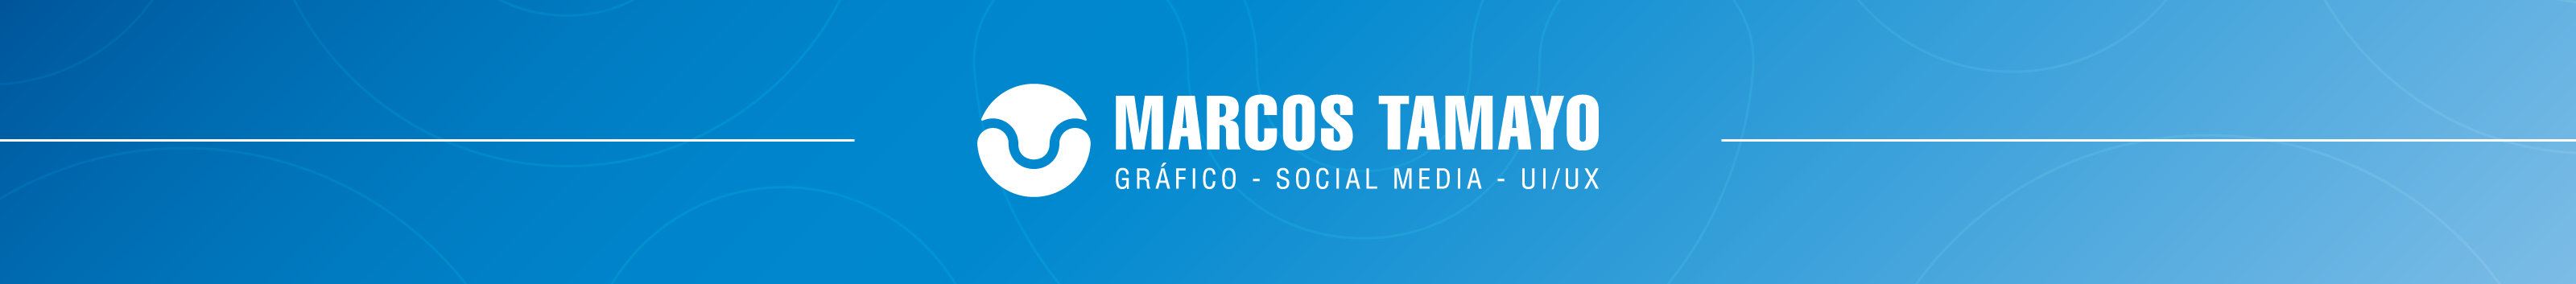 Banner de perfil de Marcos Tamayo